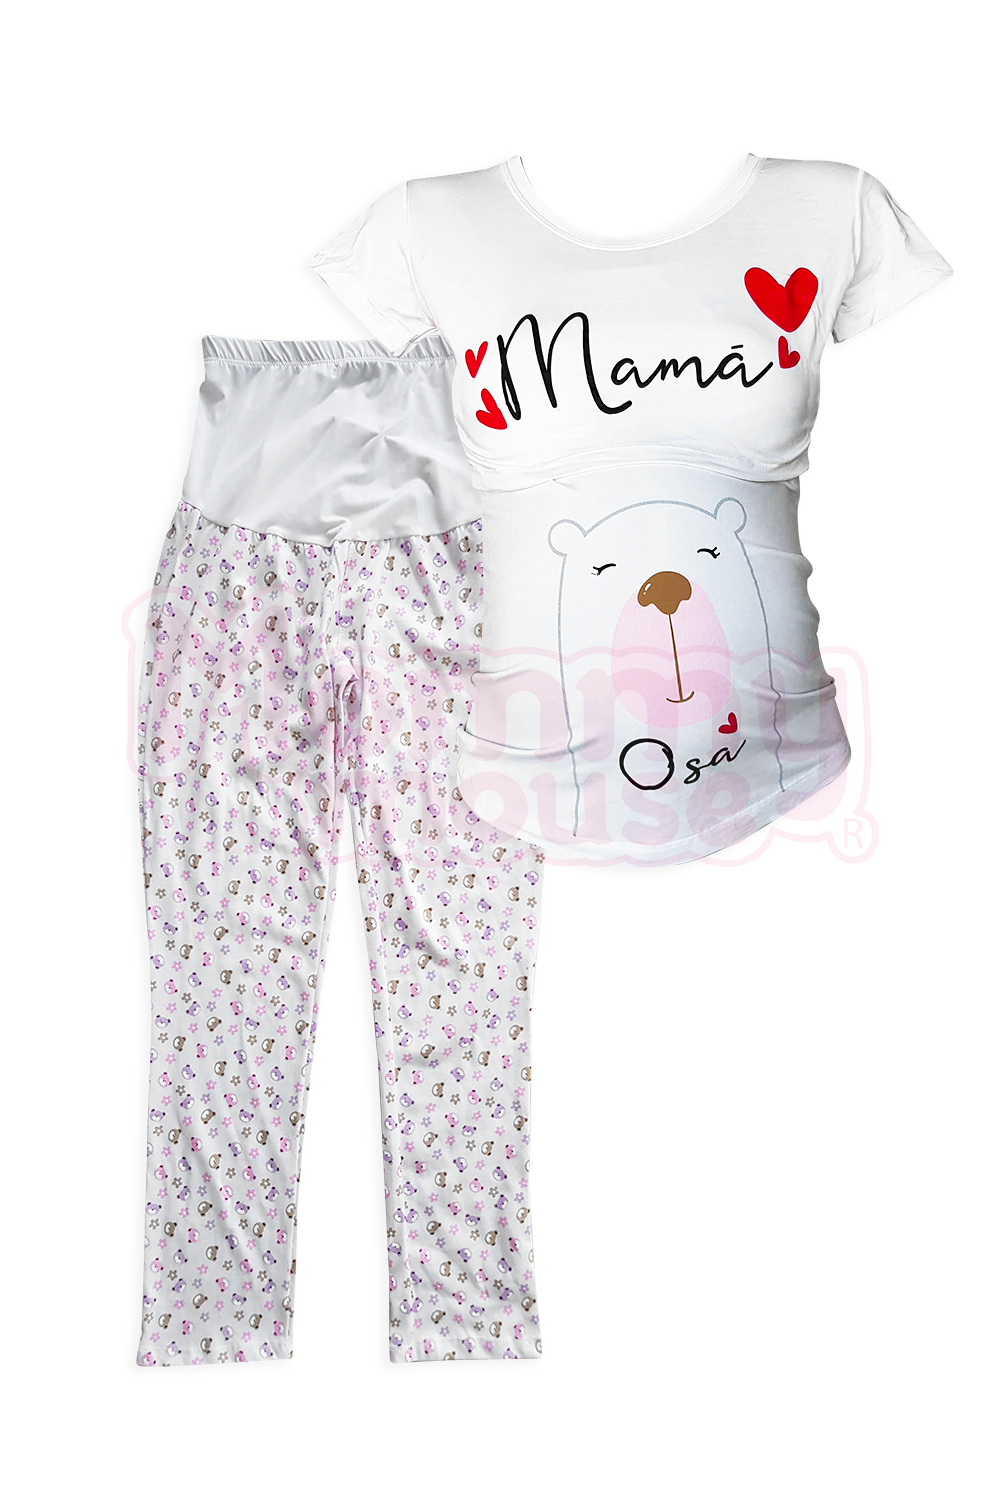 Visión general casete Supermercado Pijama maternidad-lactancia mc. Mamá Osa corazón – Mouse Apparel